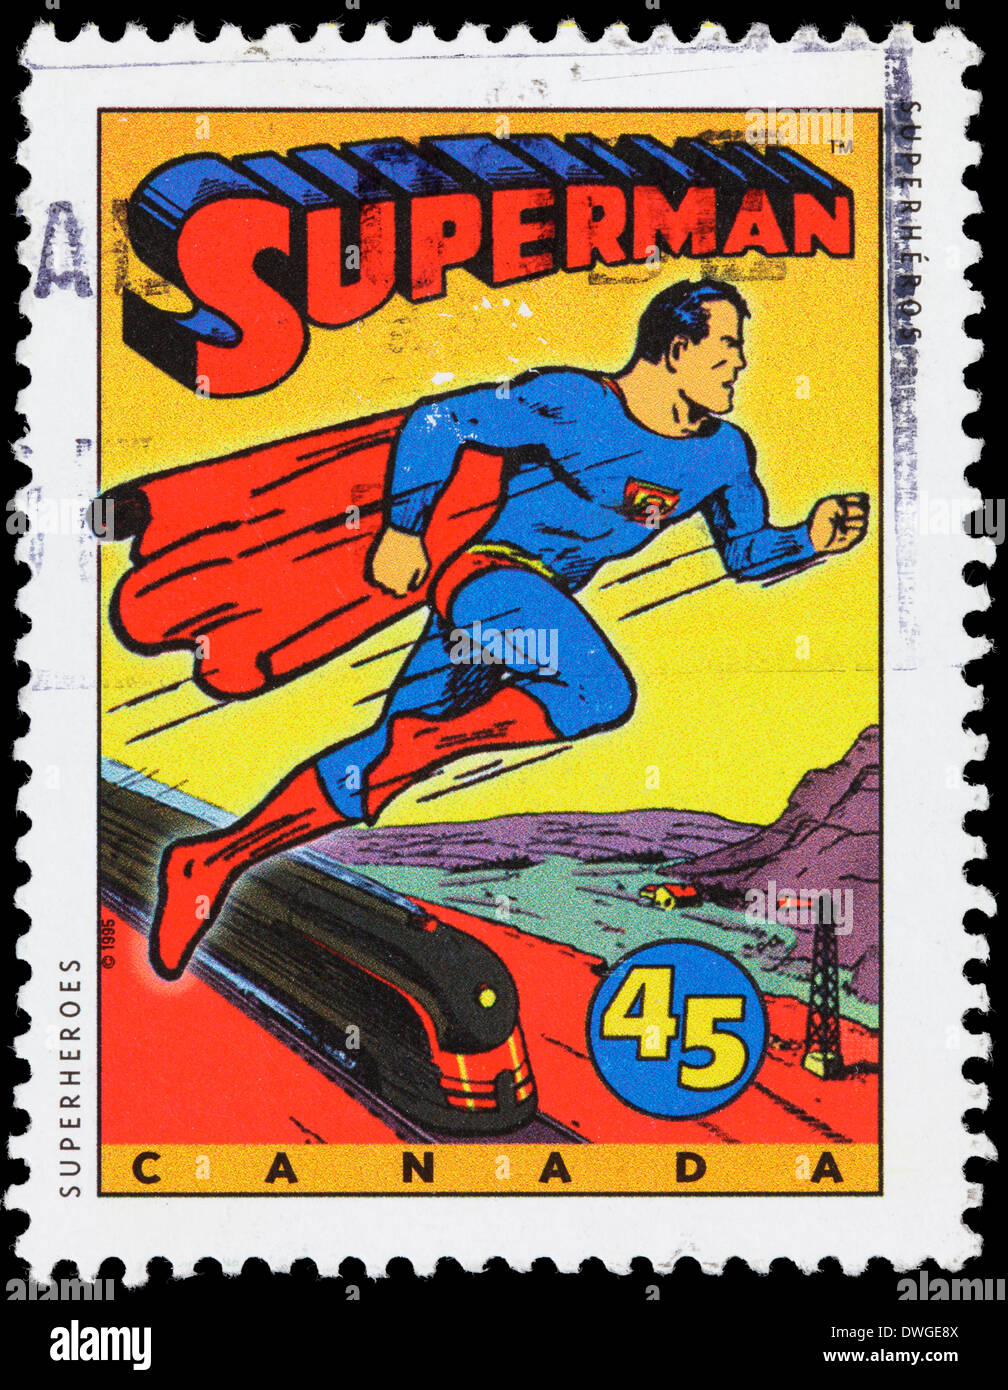 1995 Canadá estampilla postal con una ilustración del comic de superhéroes Superman. Foto de stock